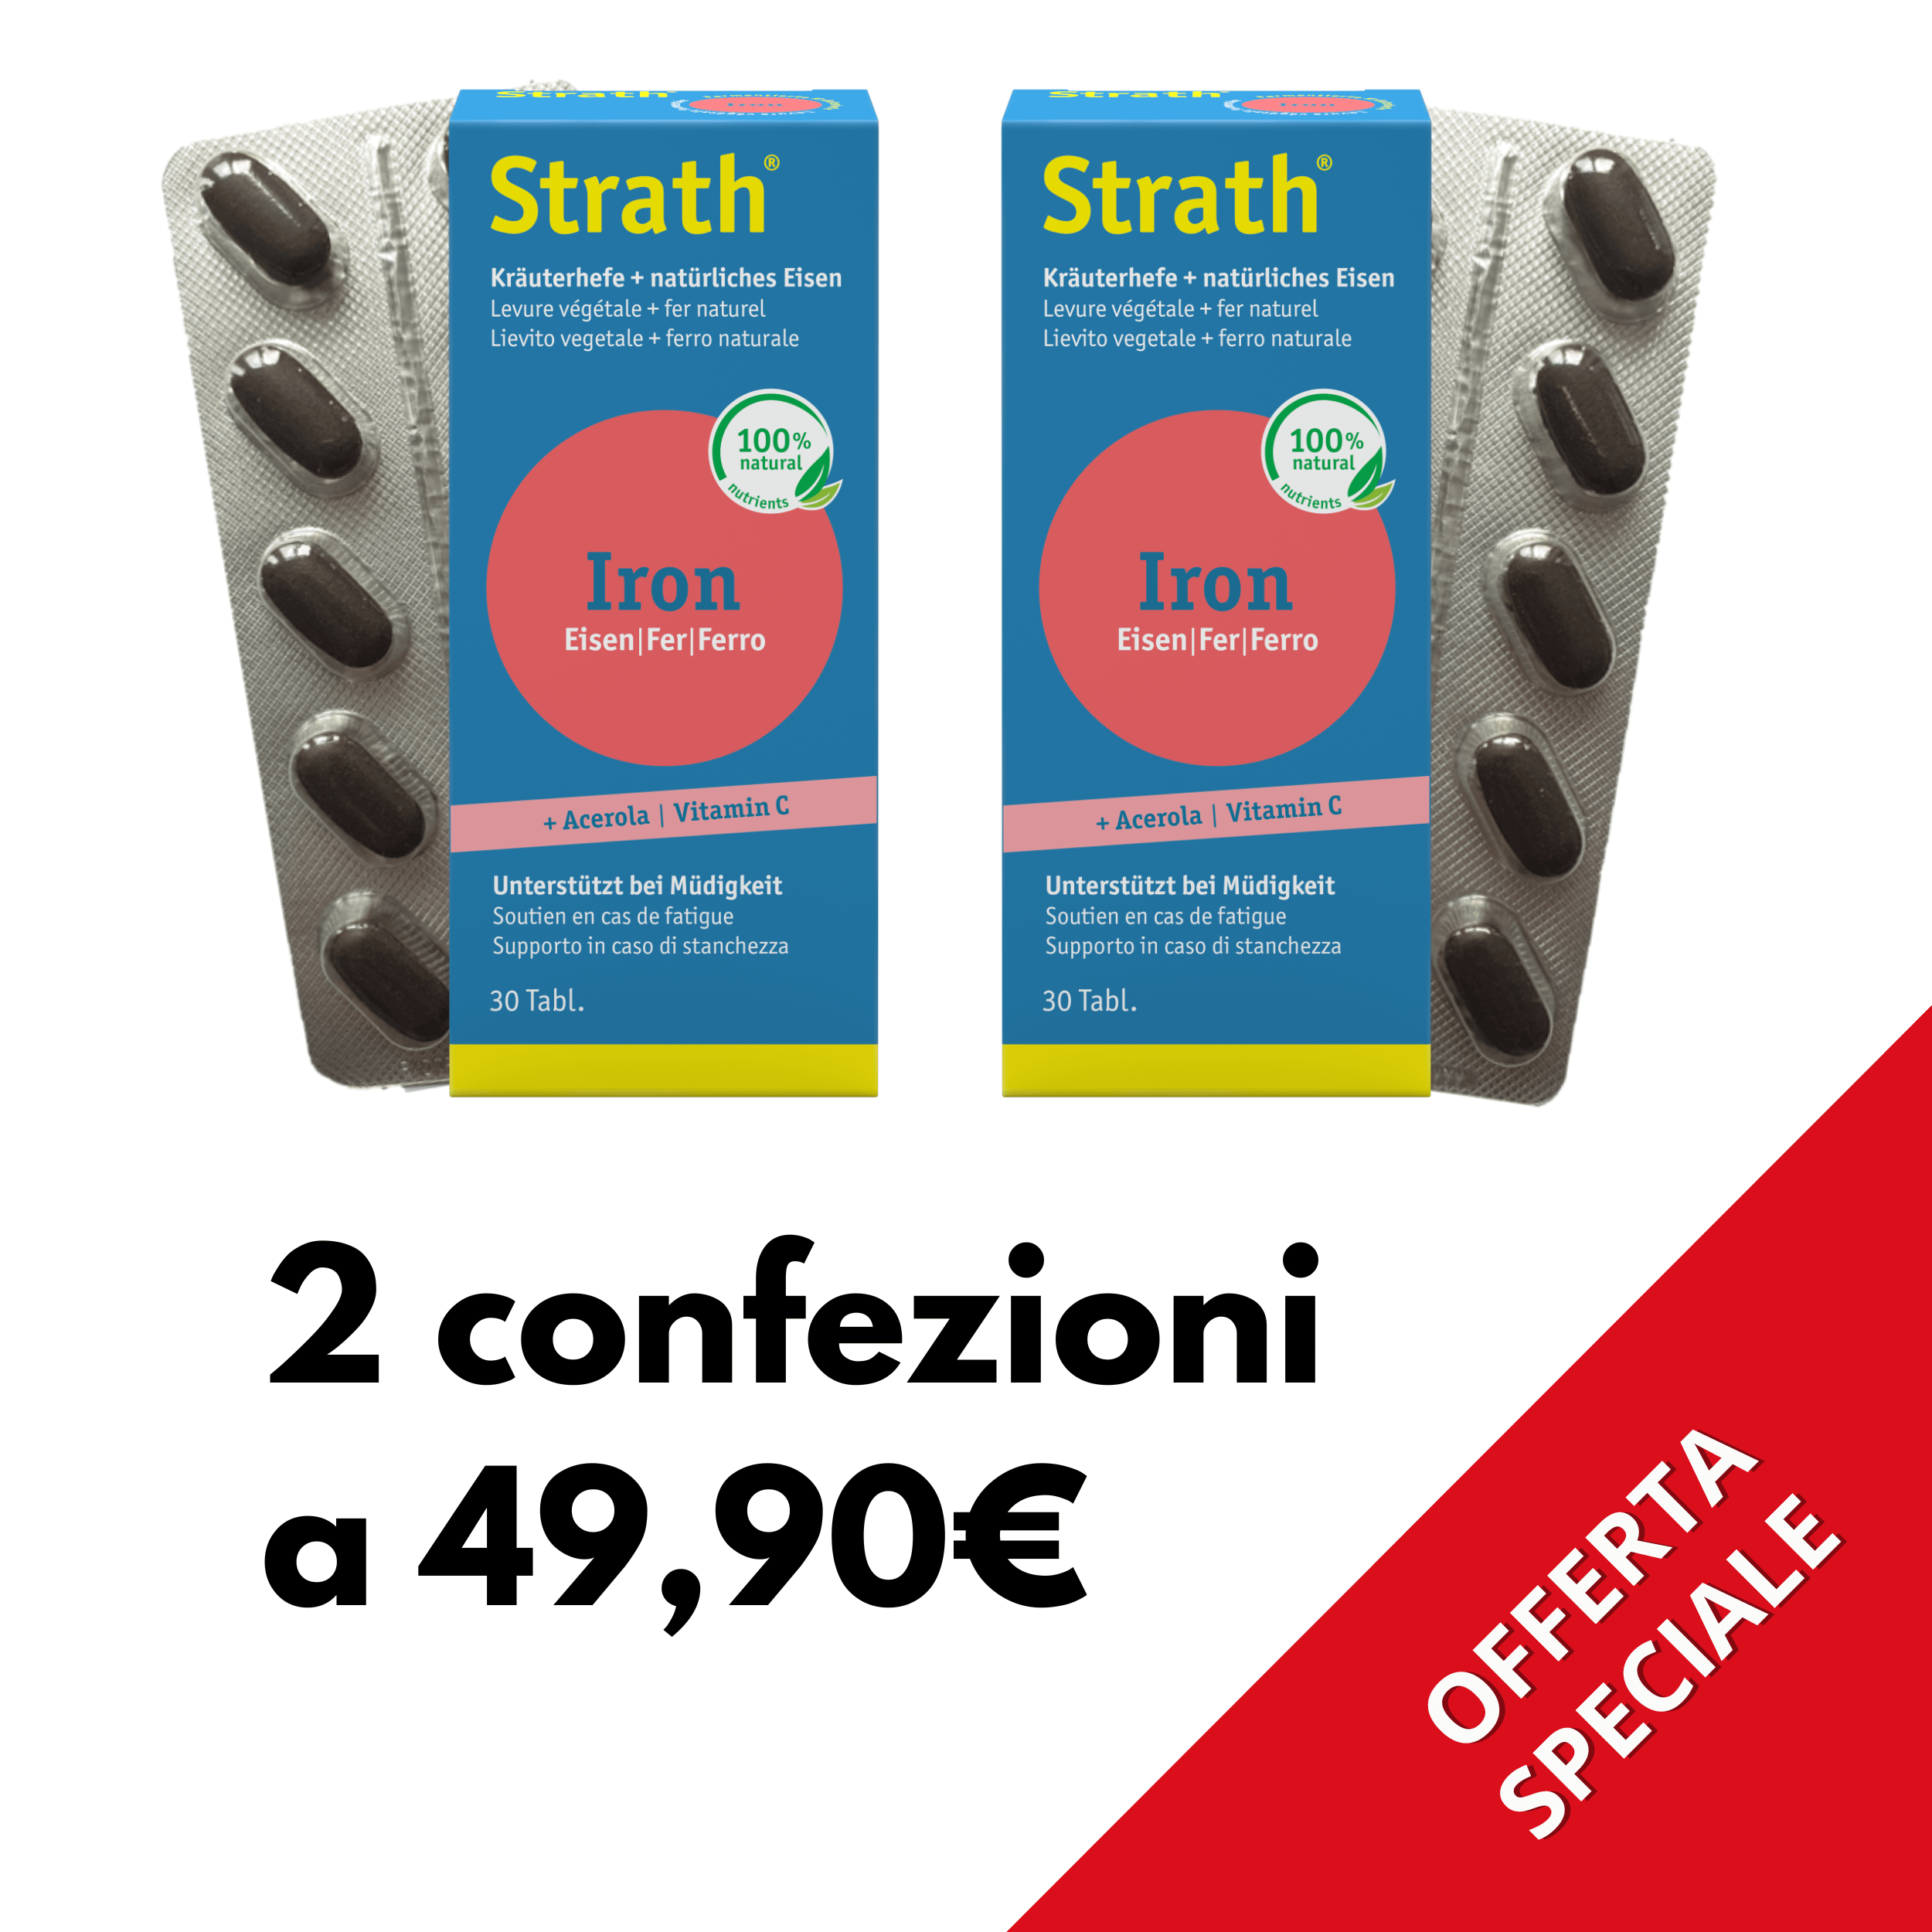 PROMO STRATH IRON - 2 confezioni a 49,90€